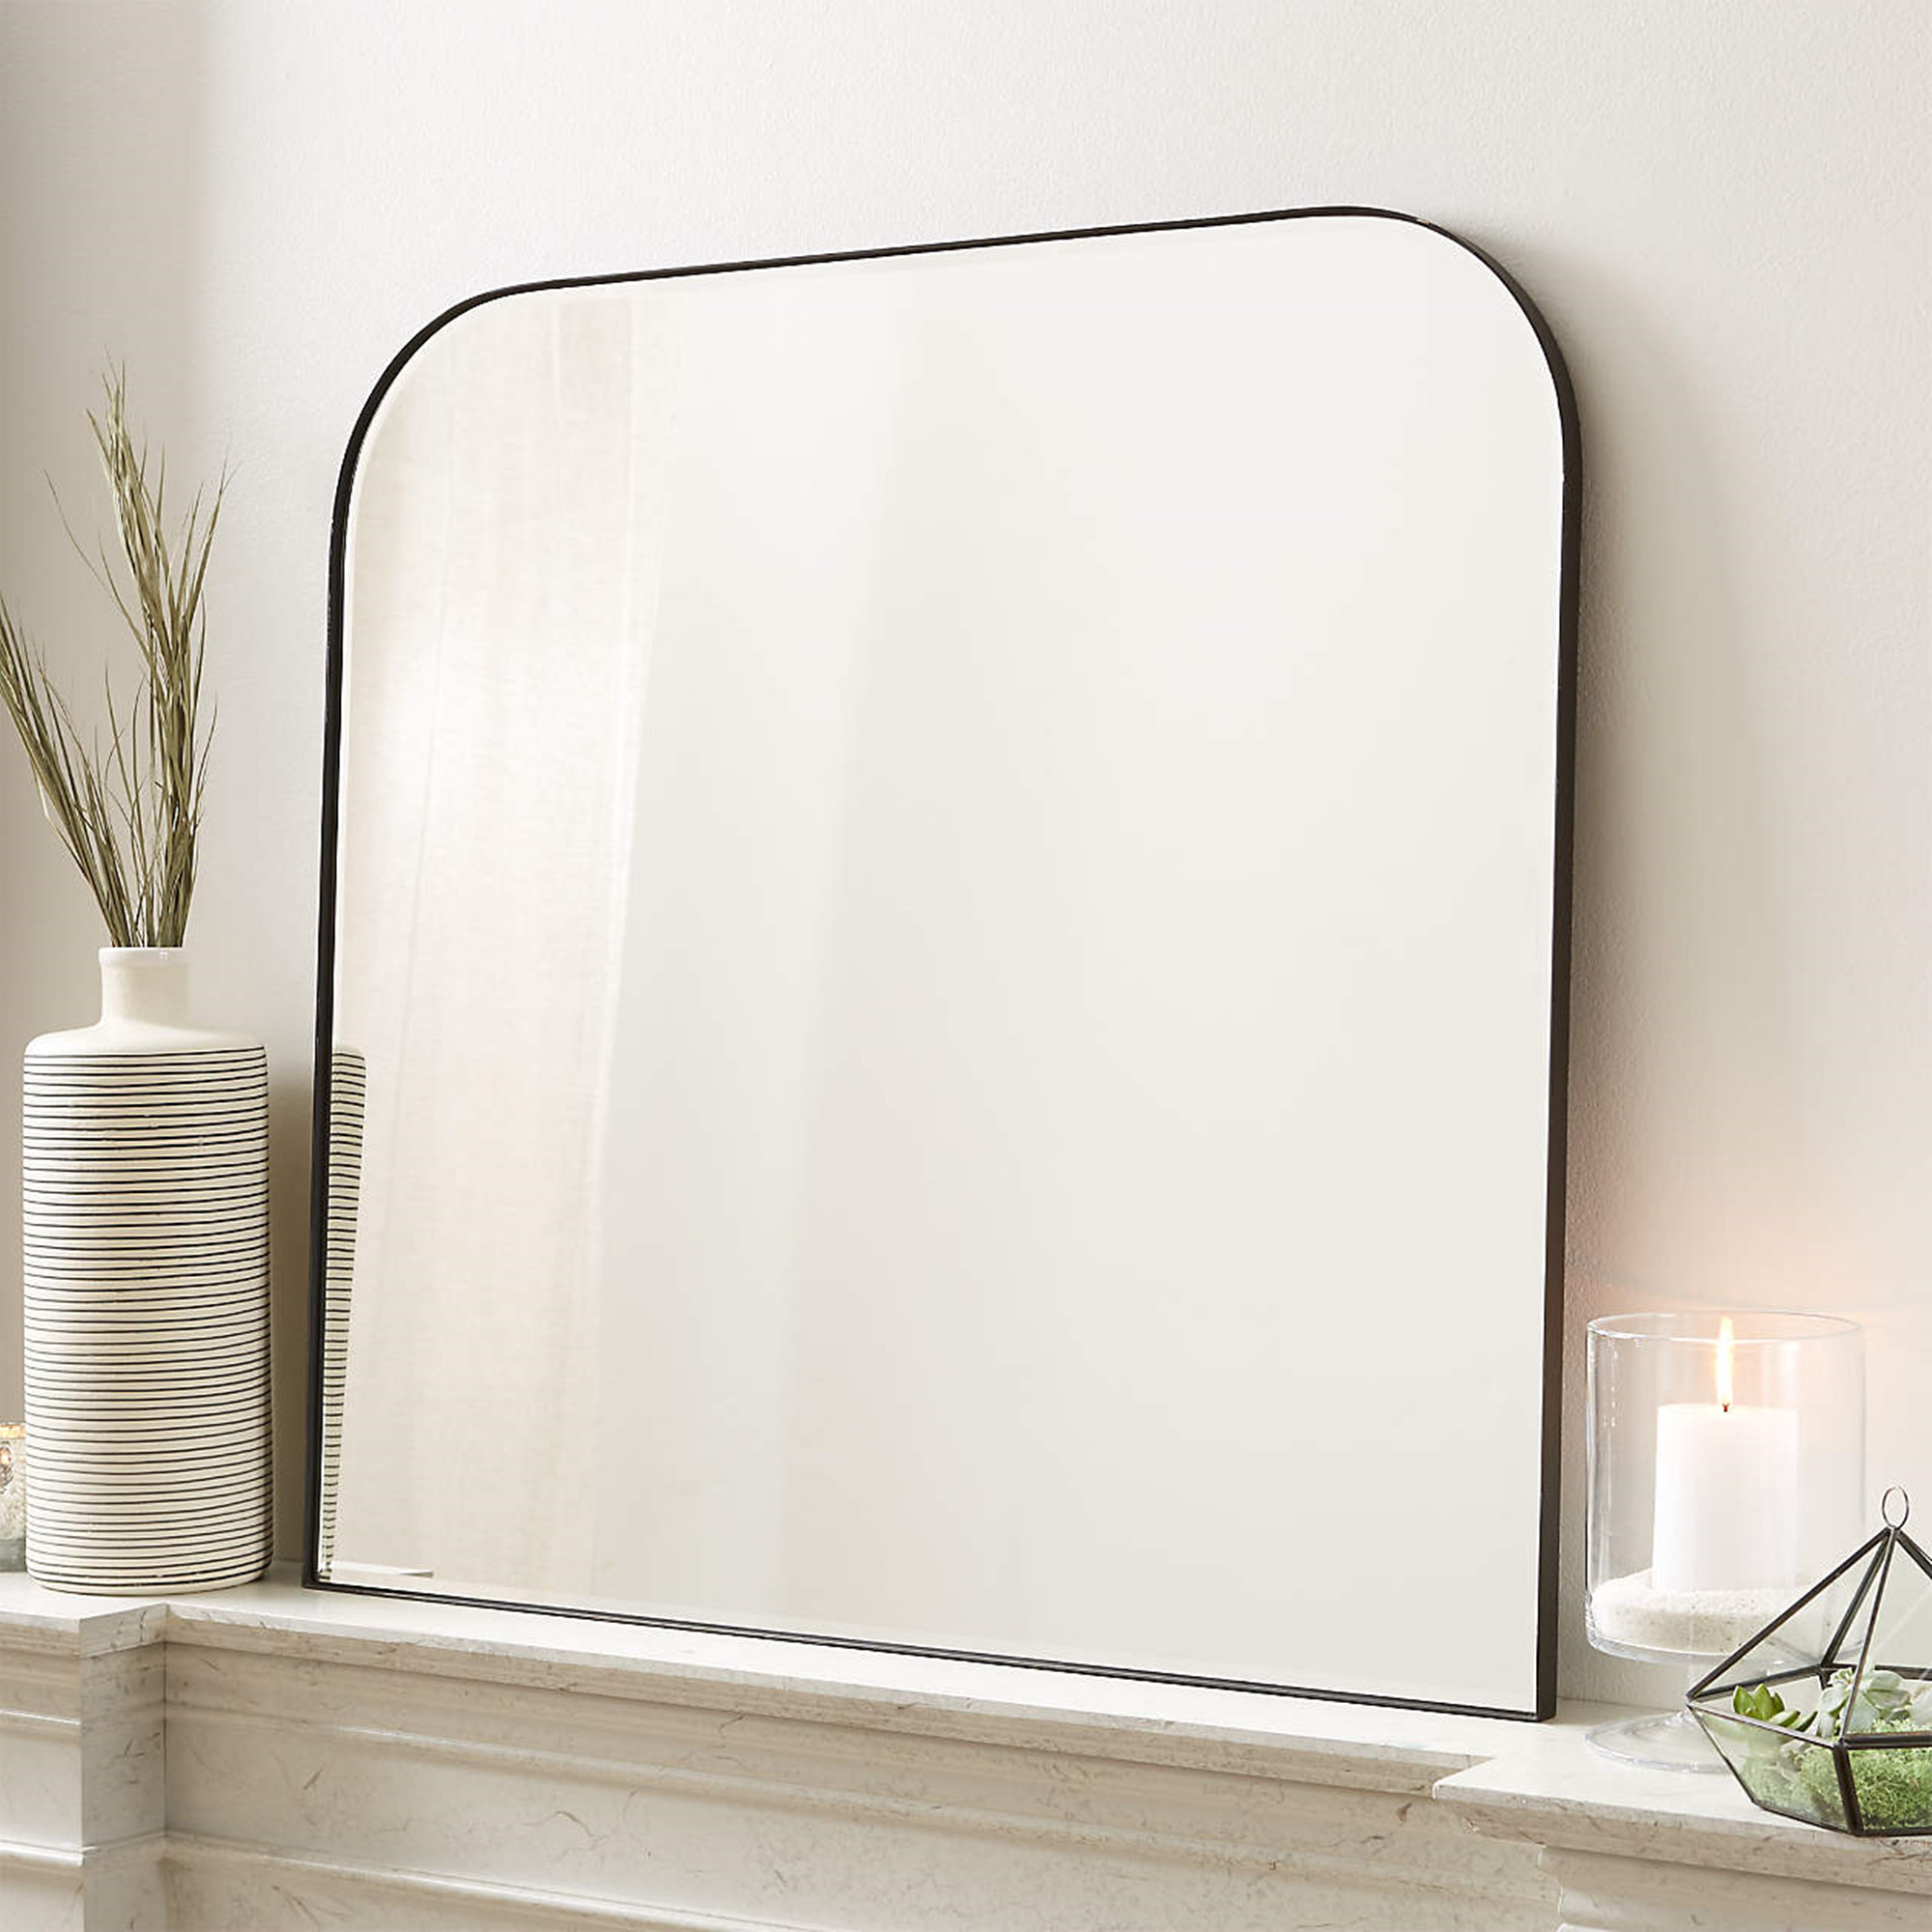 Decole Arch Mantel Mirror, Dresser Mirror